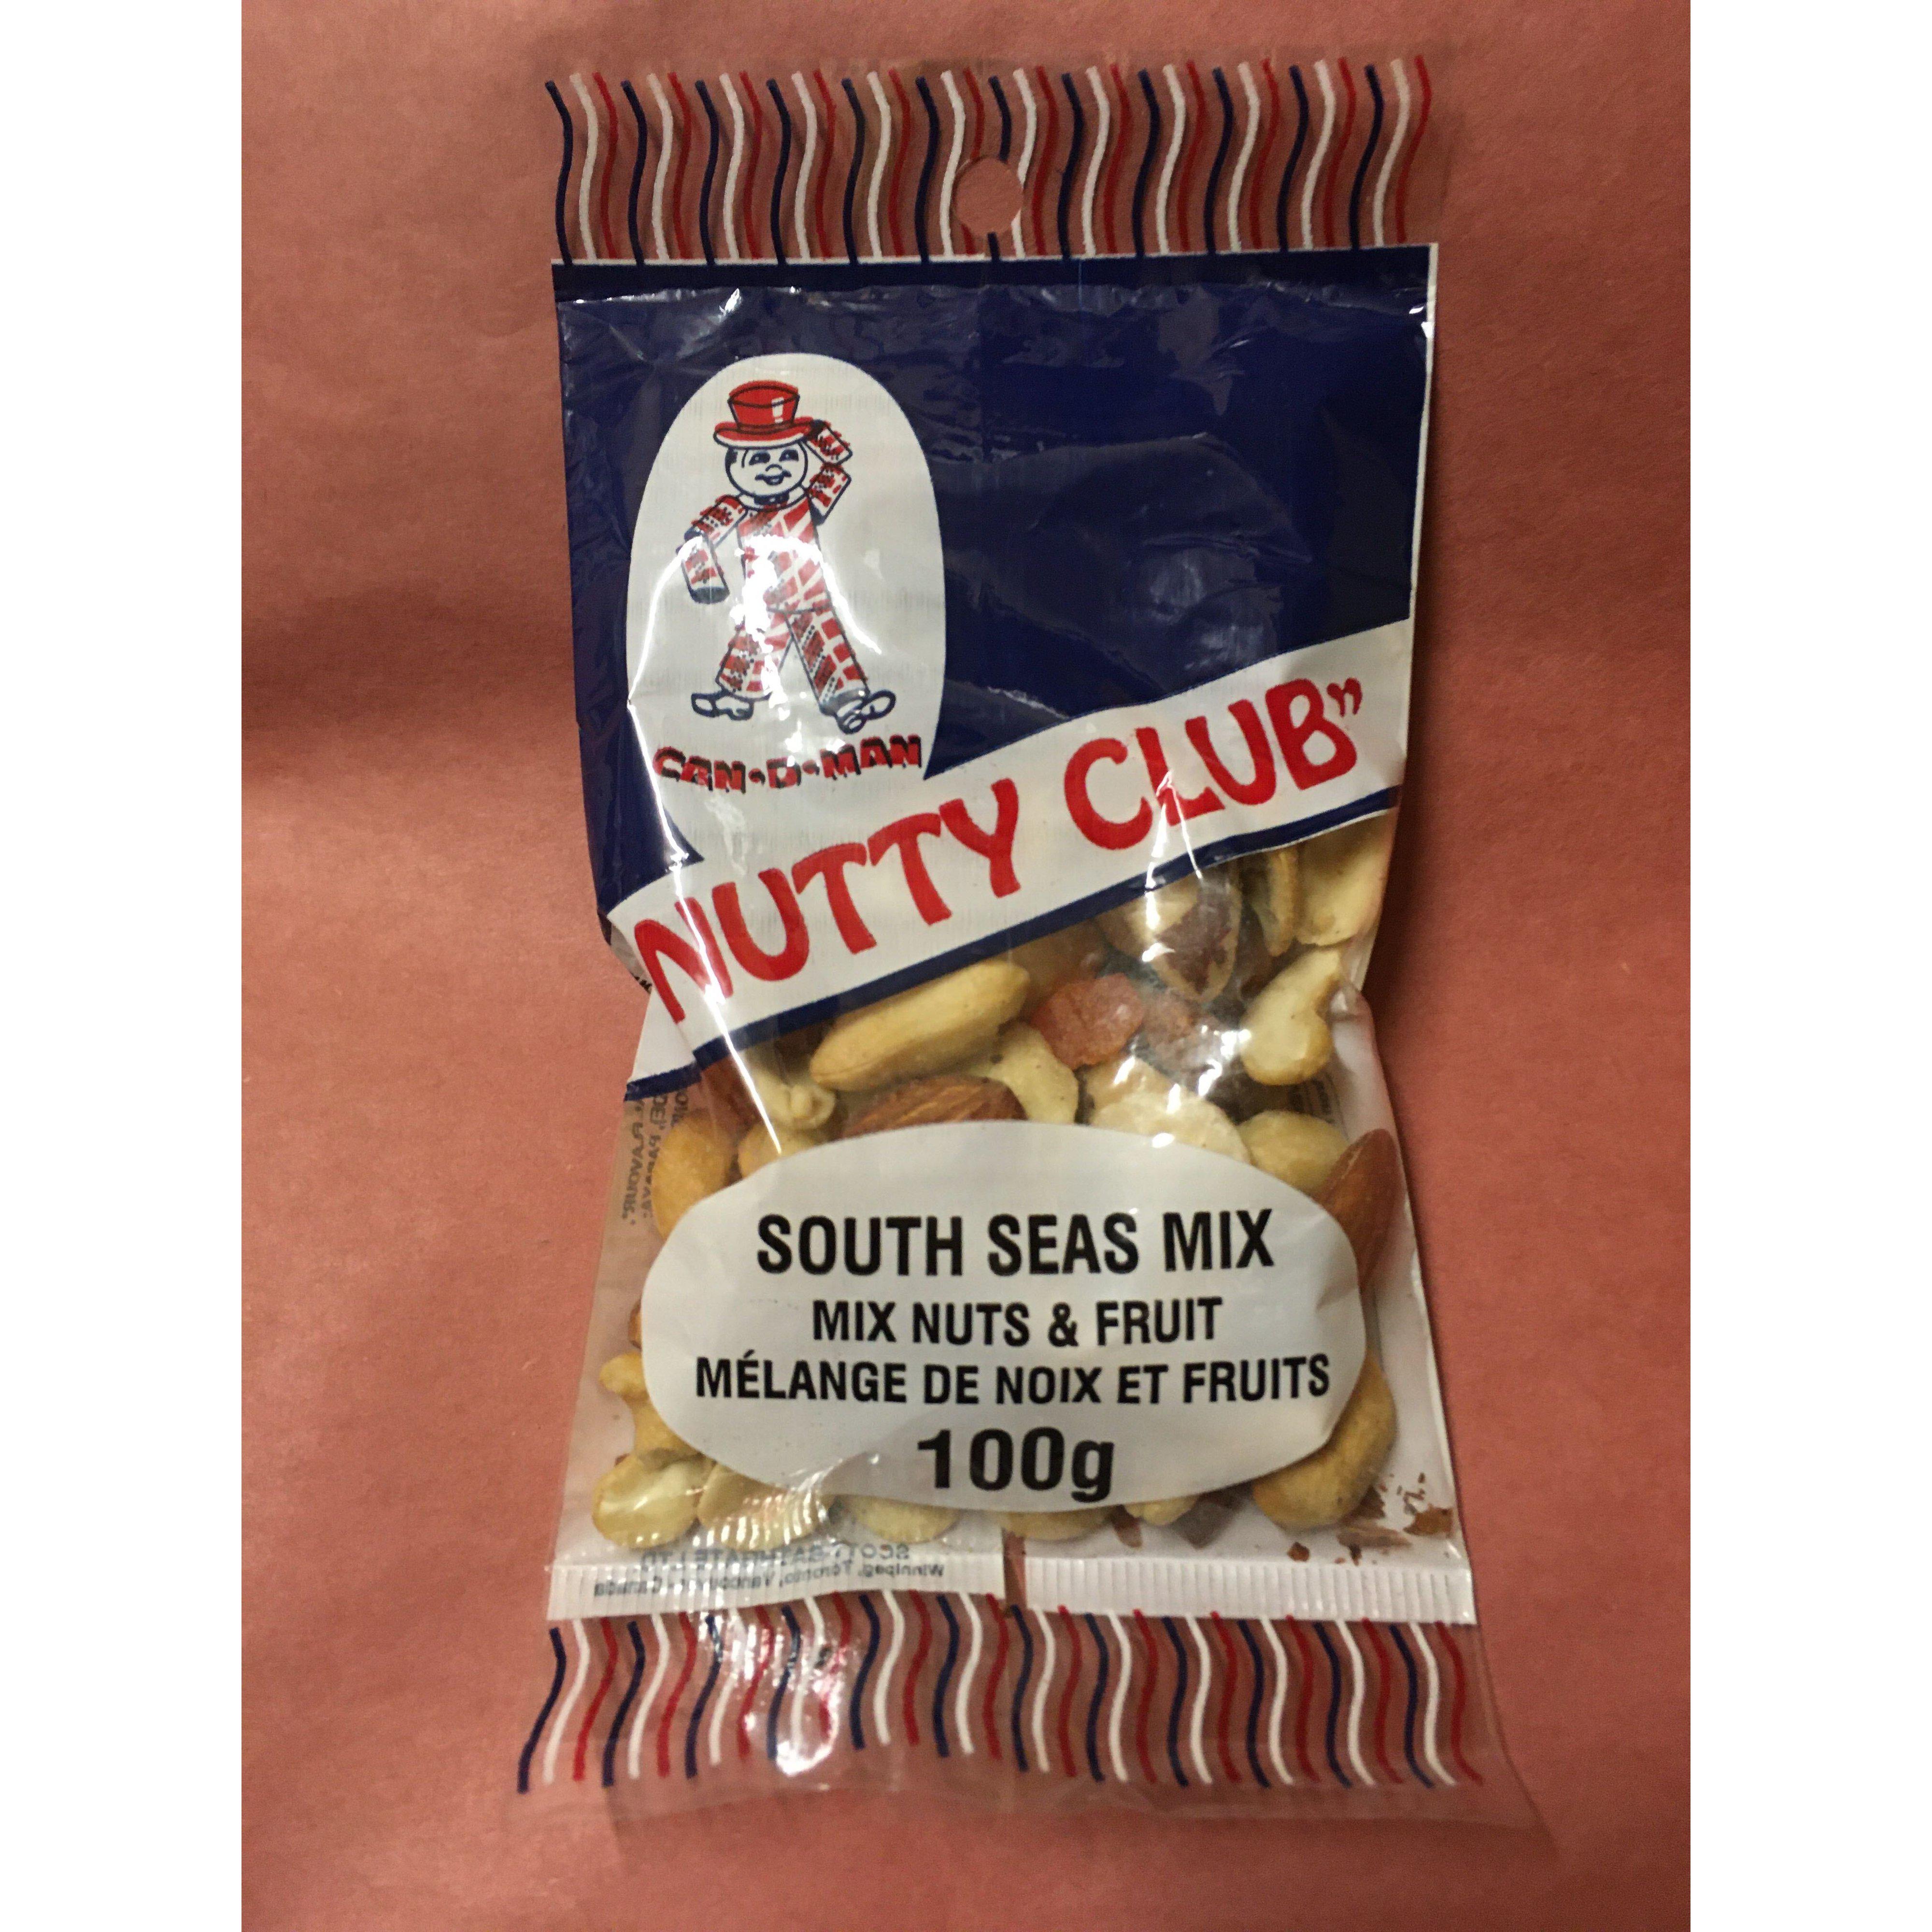 Nutty Club South Seas Mix 100g